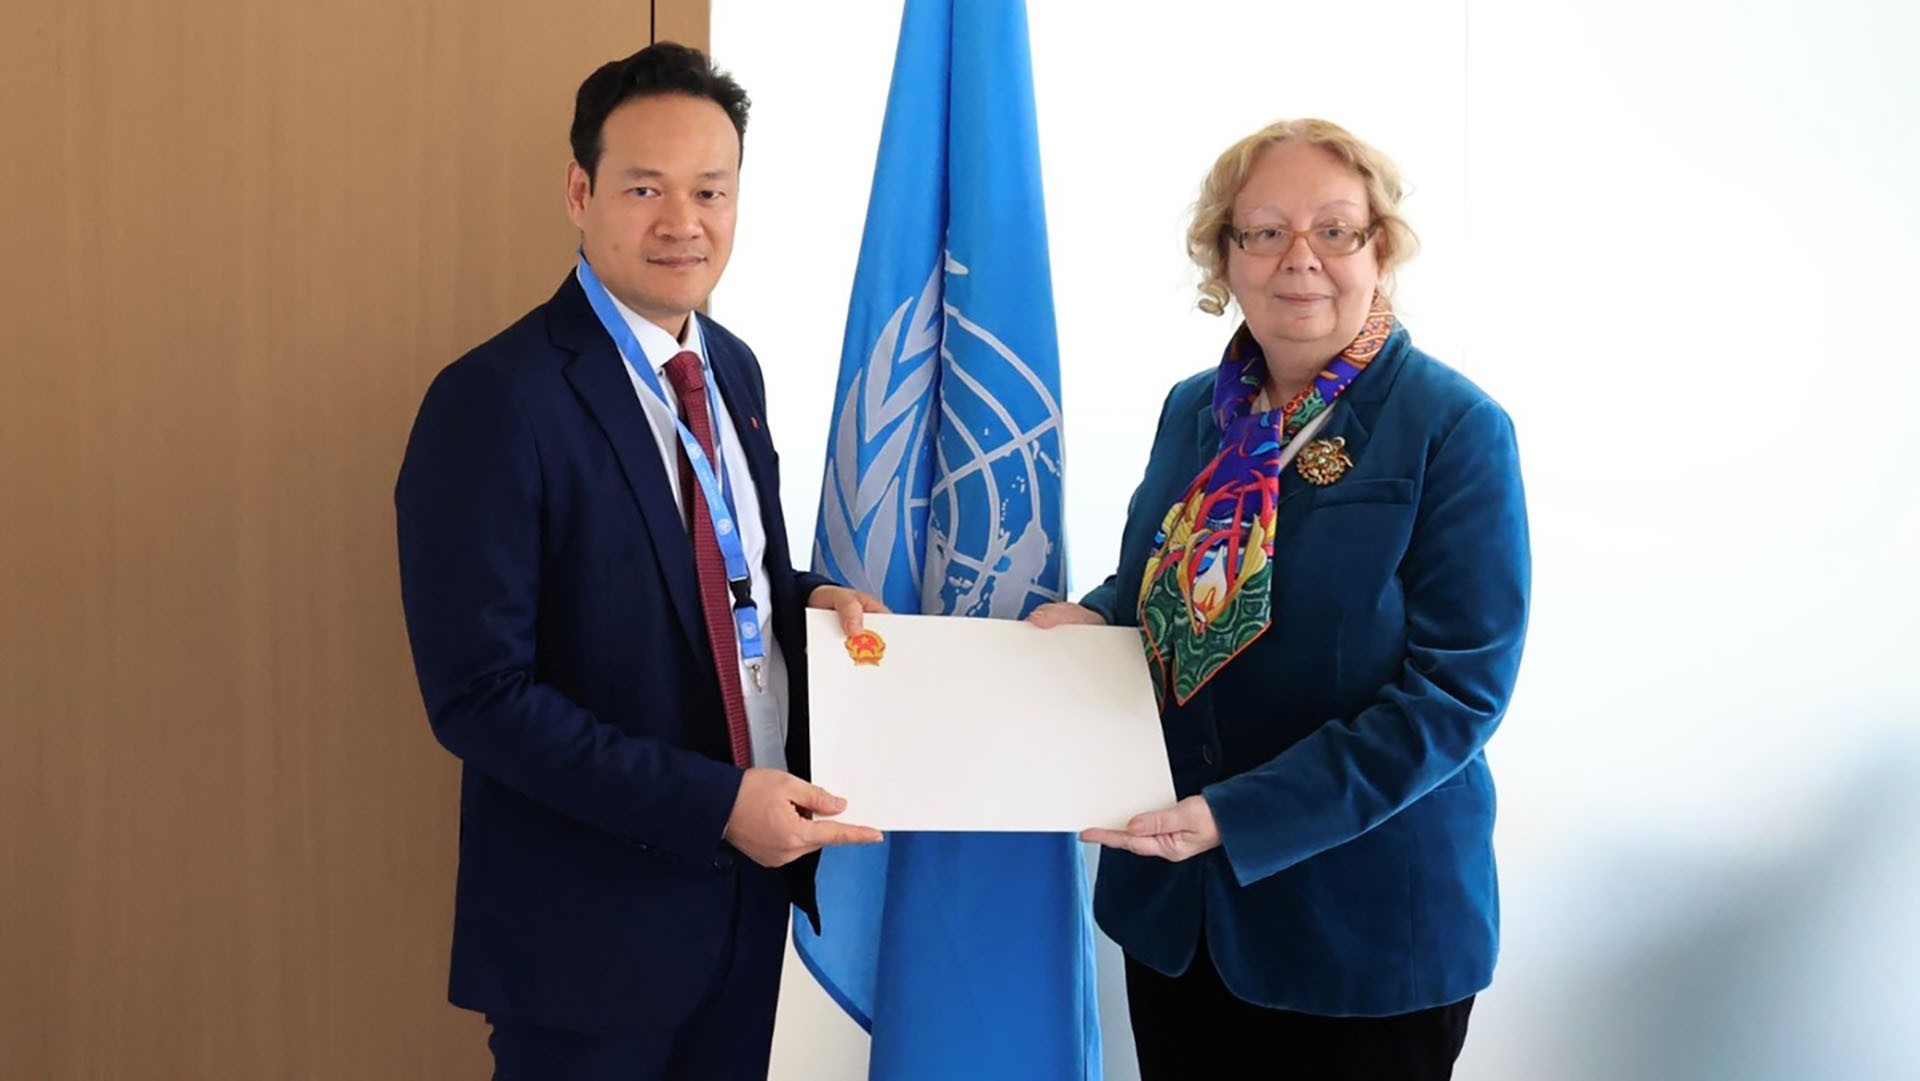 Đại sứ Mai Phan Dũng trình Thư ủy nhiệm lên Tổng giám đốc Văn phòng Liên hợp quốc tại Geneva Tatiana Valovaya.